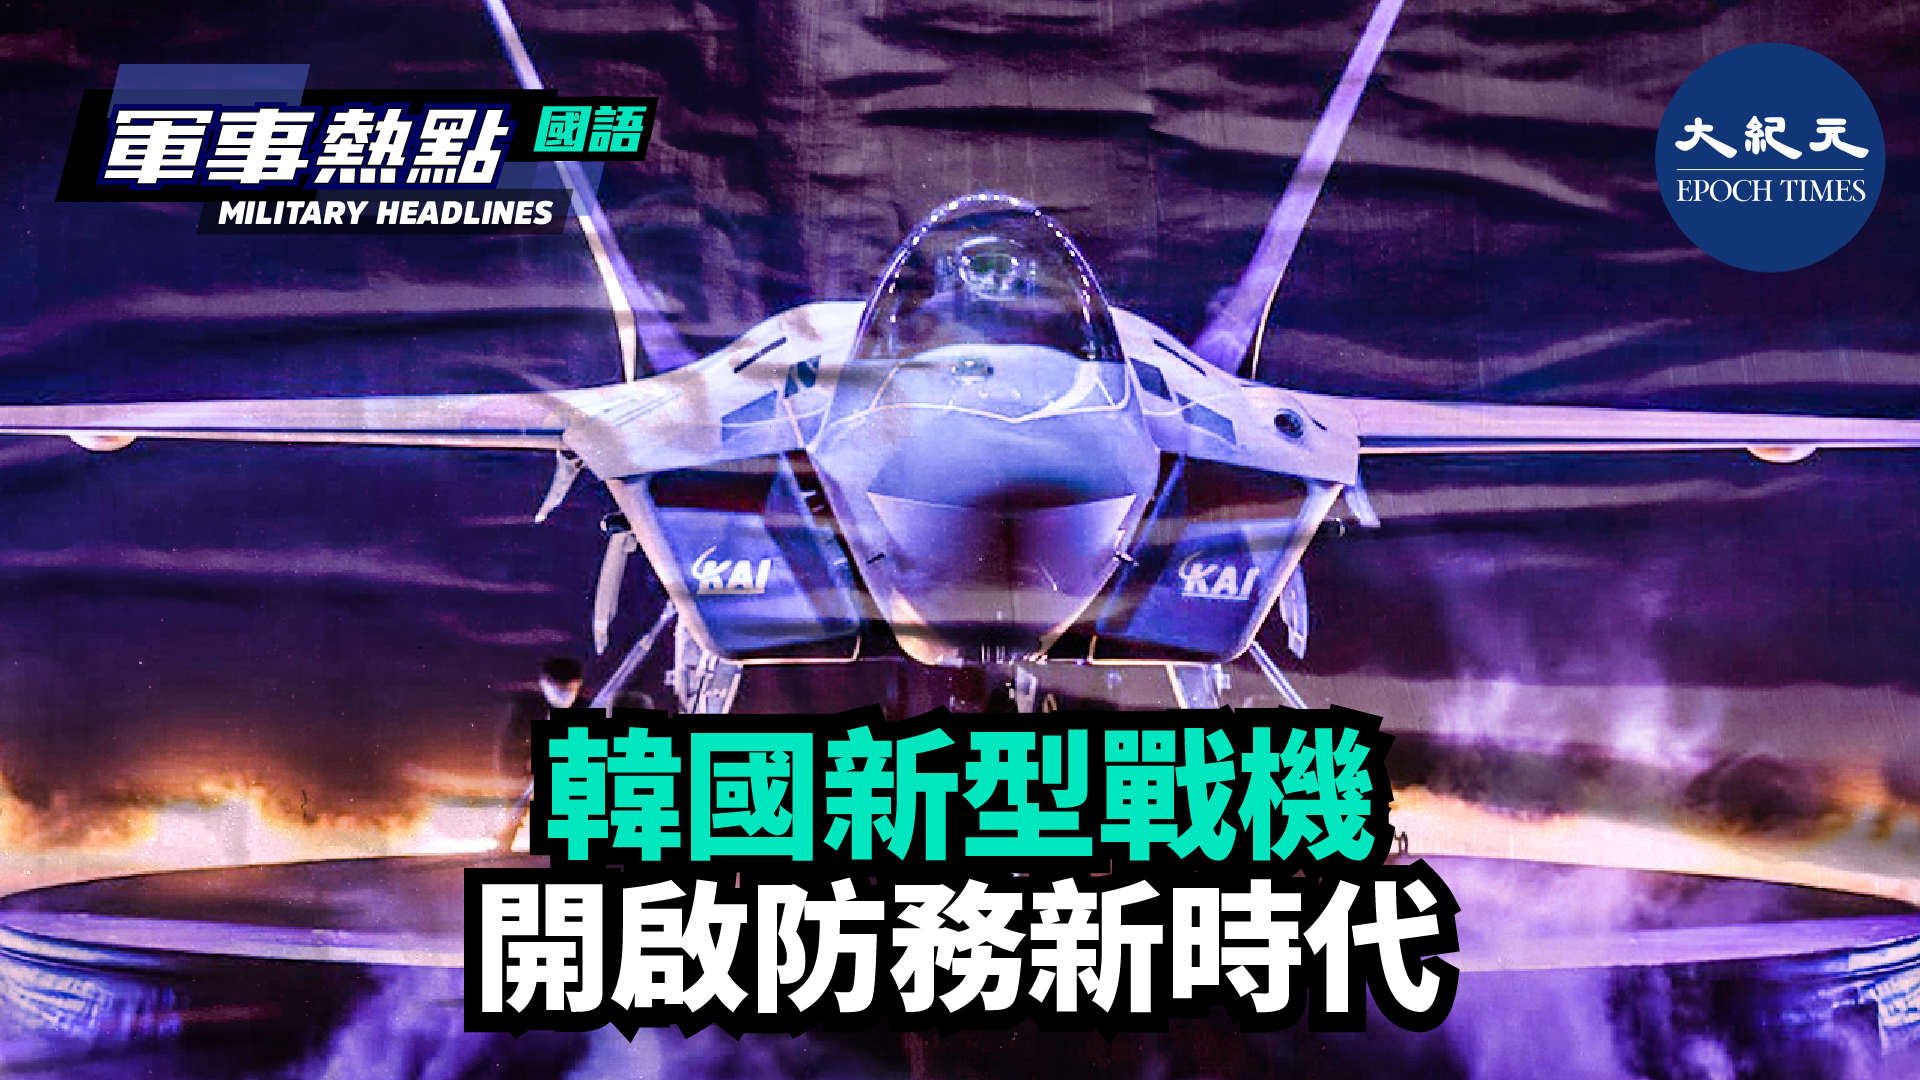 【軍事熱點】(國語) 新型四代半戰機將讓韓國擁有一項值得自豪的國防裝備，不僅提升韓國的武器自主能力，甚至提升韓國的主權地位。